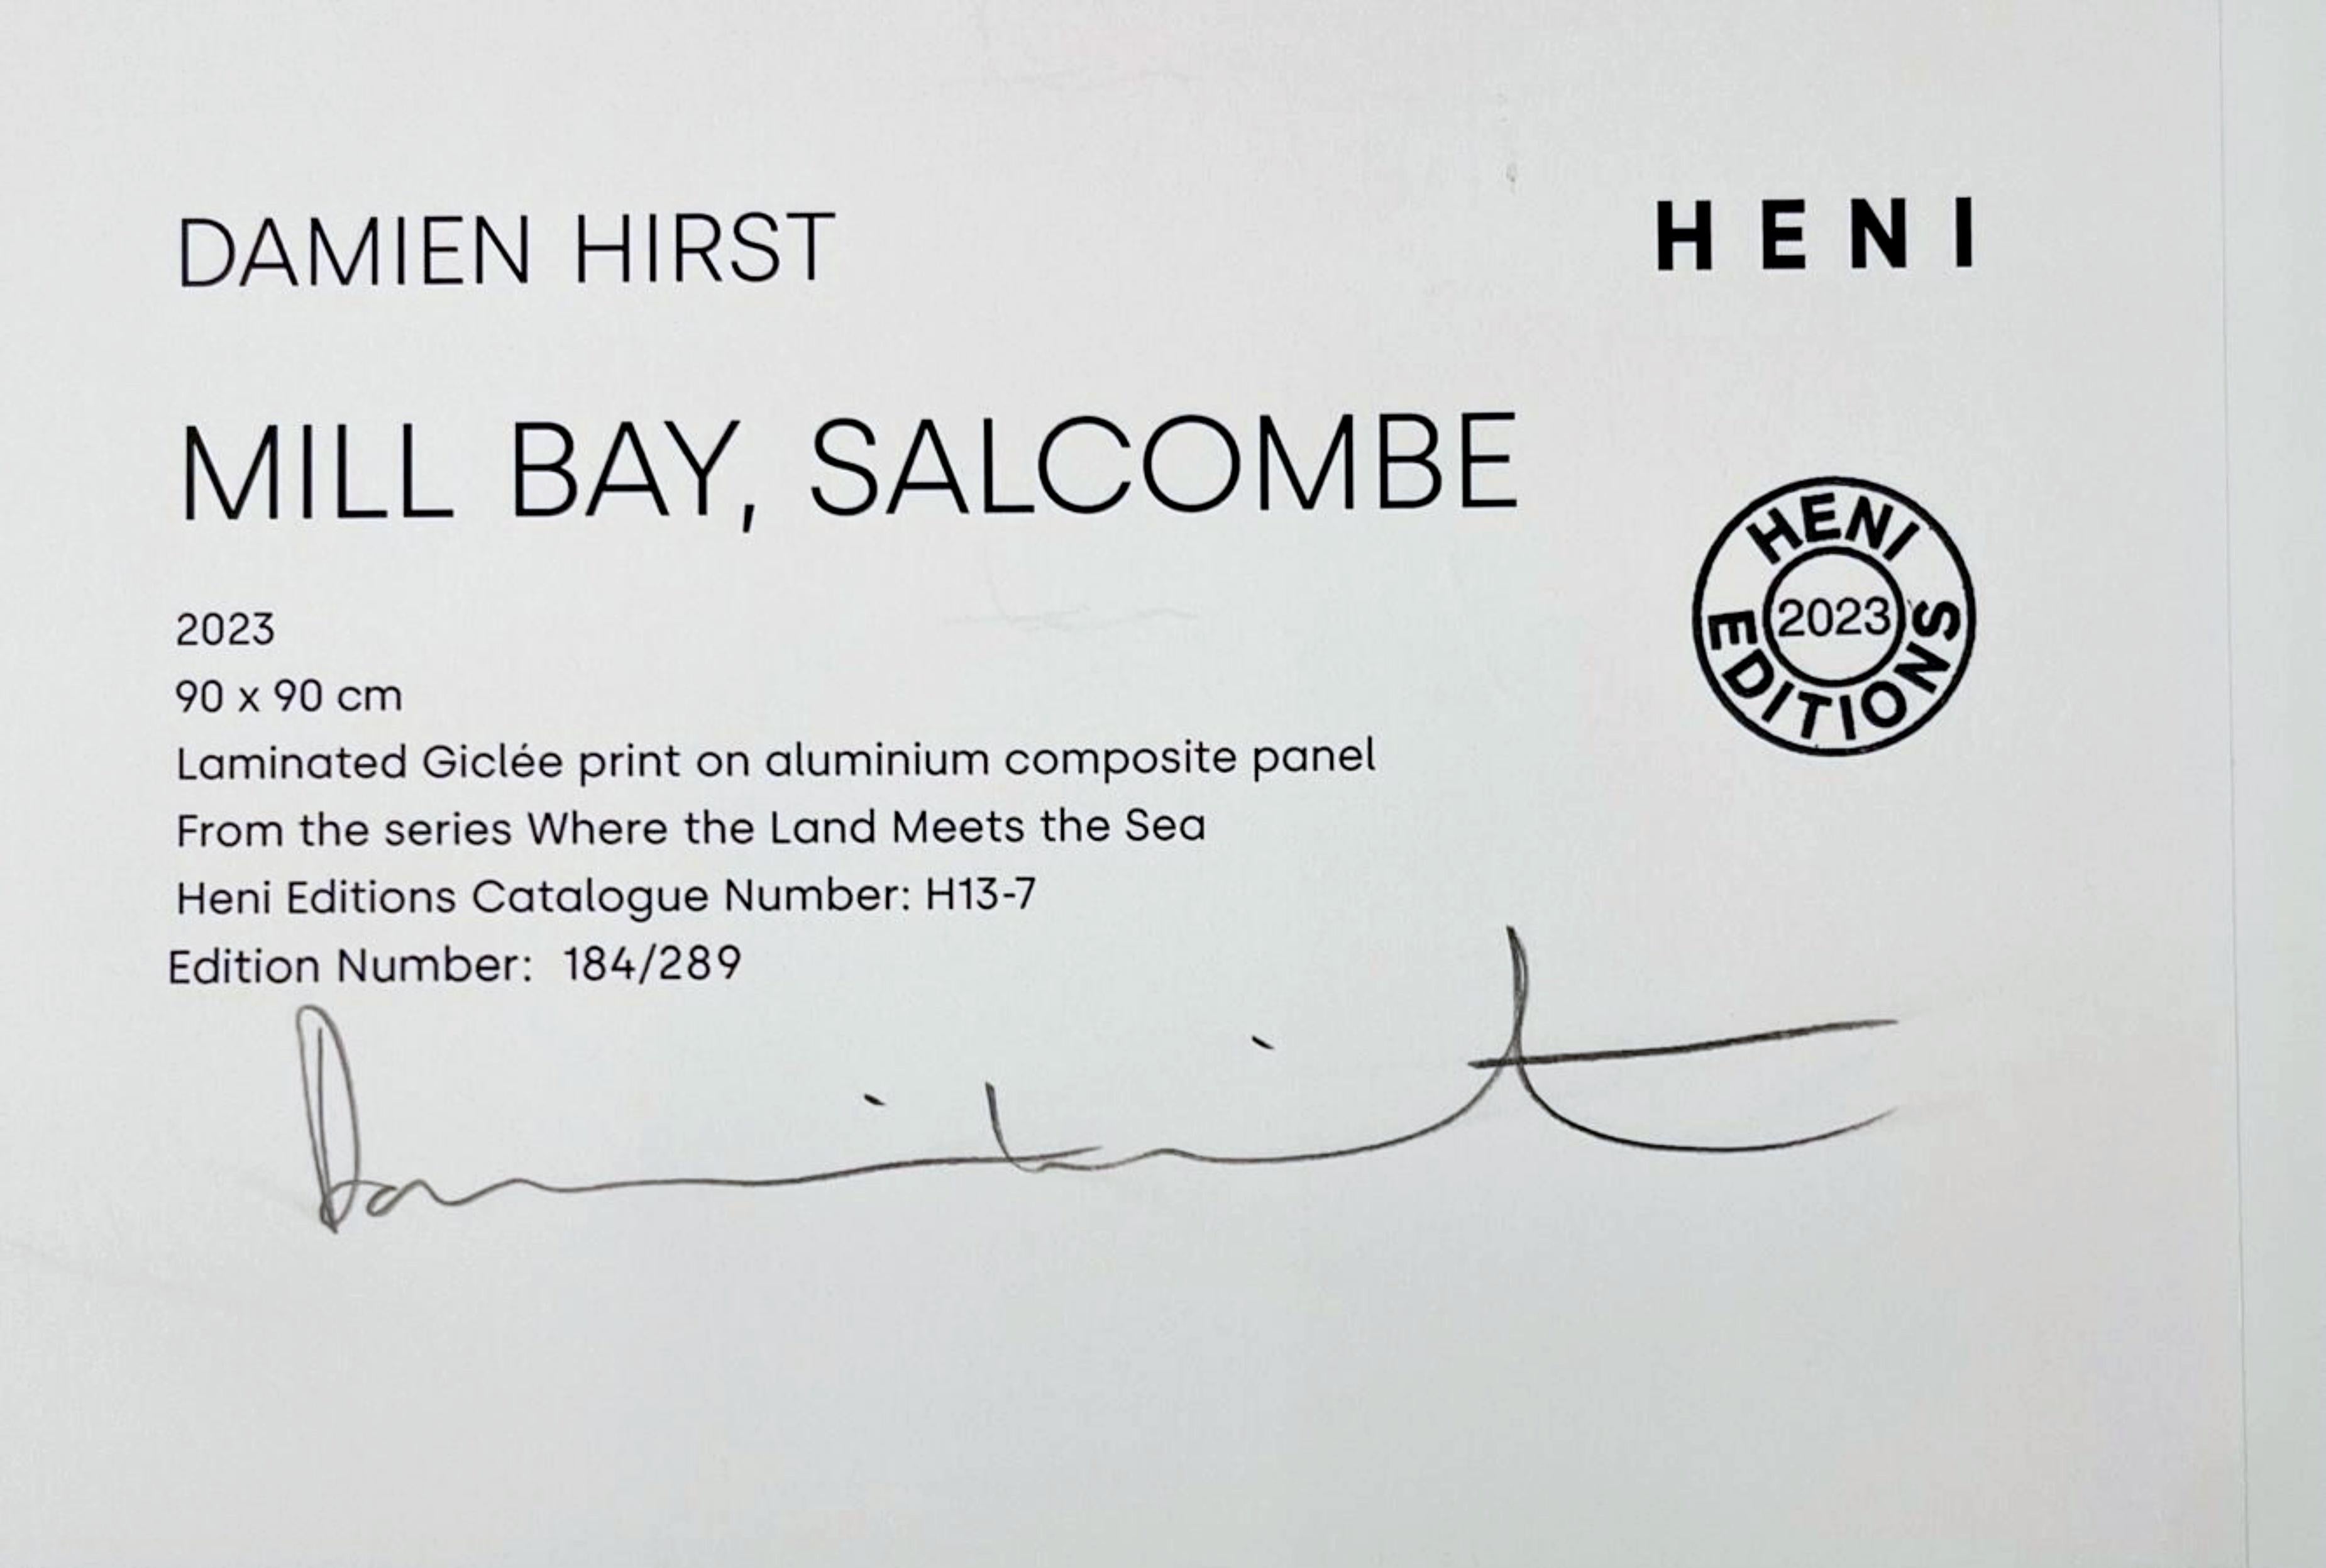 Damien Hirst
Mill Bay, Salcombe, H13-7, von Wo das Land das Meer trifft, 2023
Laminierter Giclée-Druck auf Aluminiumverbundplatte
Signiert und nummeriert 184/289 in Graphitstift auf dem Label auf der Rückseite
Direkt vom Verlag erworben - Heni